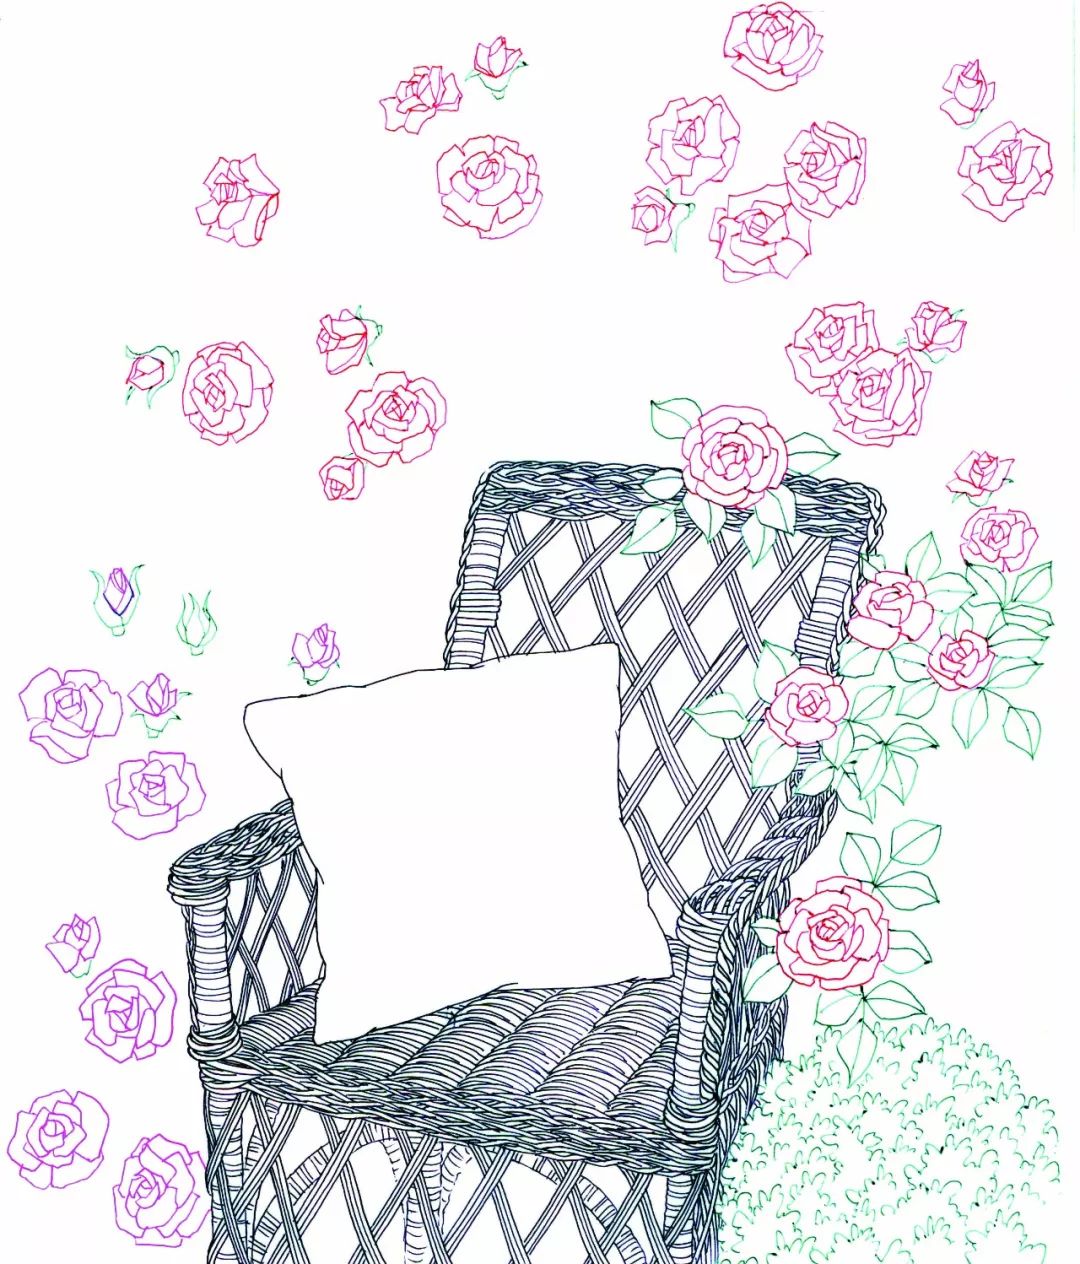 铅笔画出藤椅细节和花朵位置等1